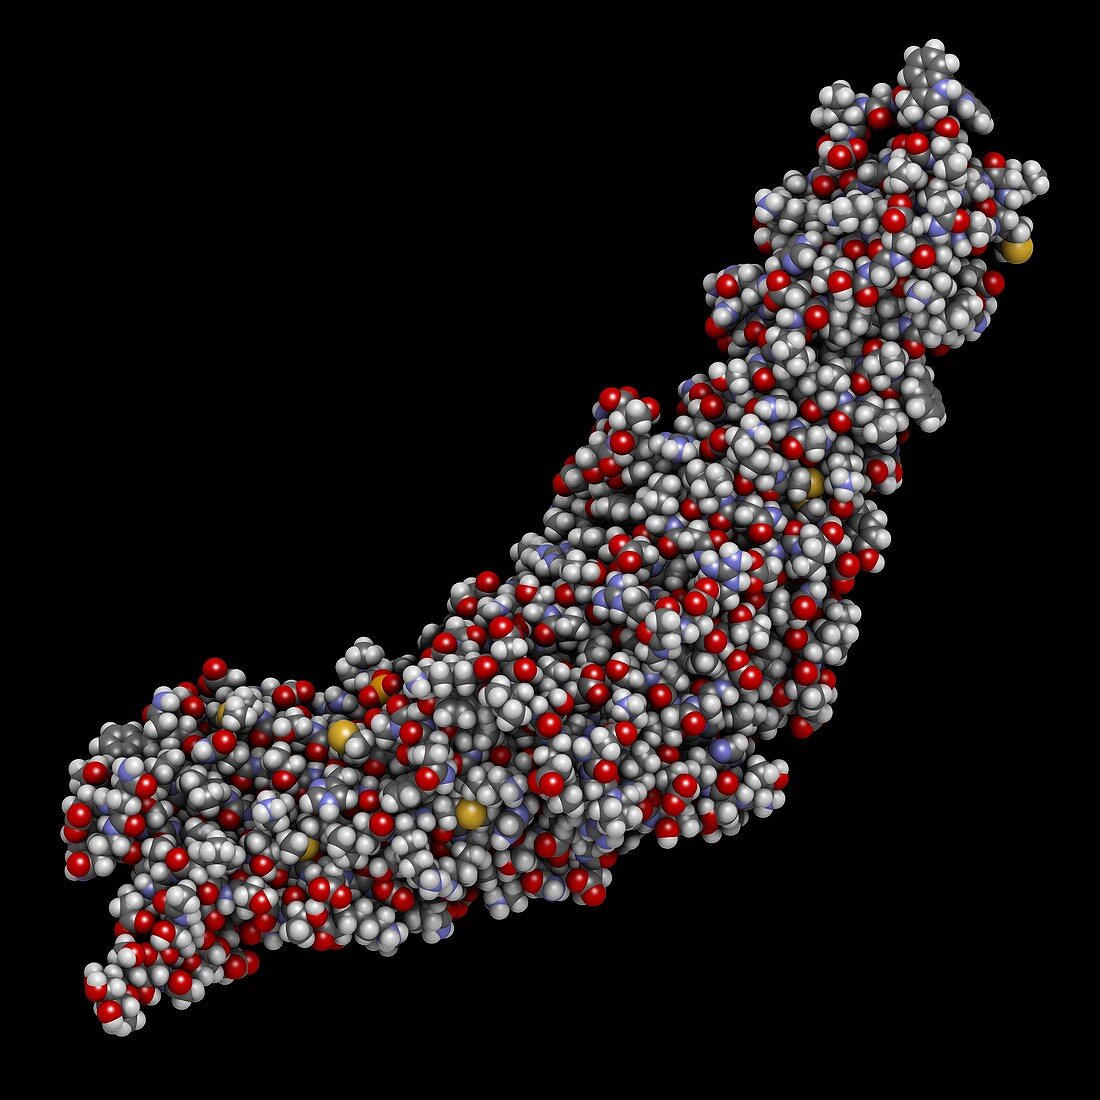 CETP protein molecule, illustration